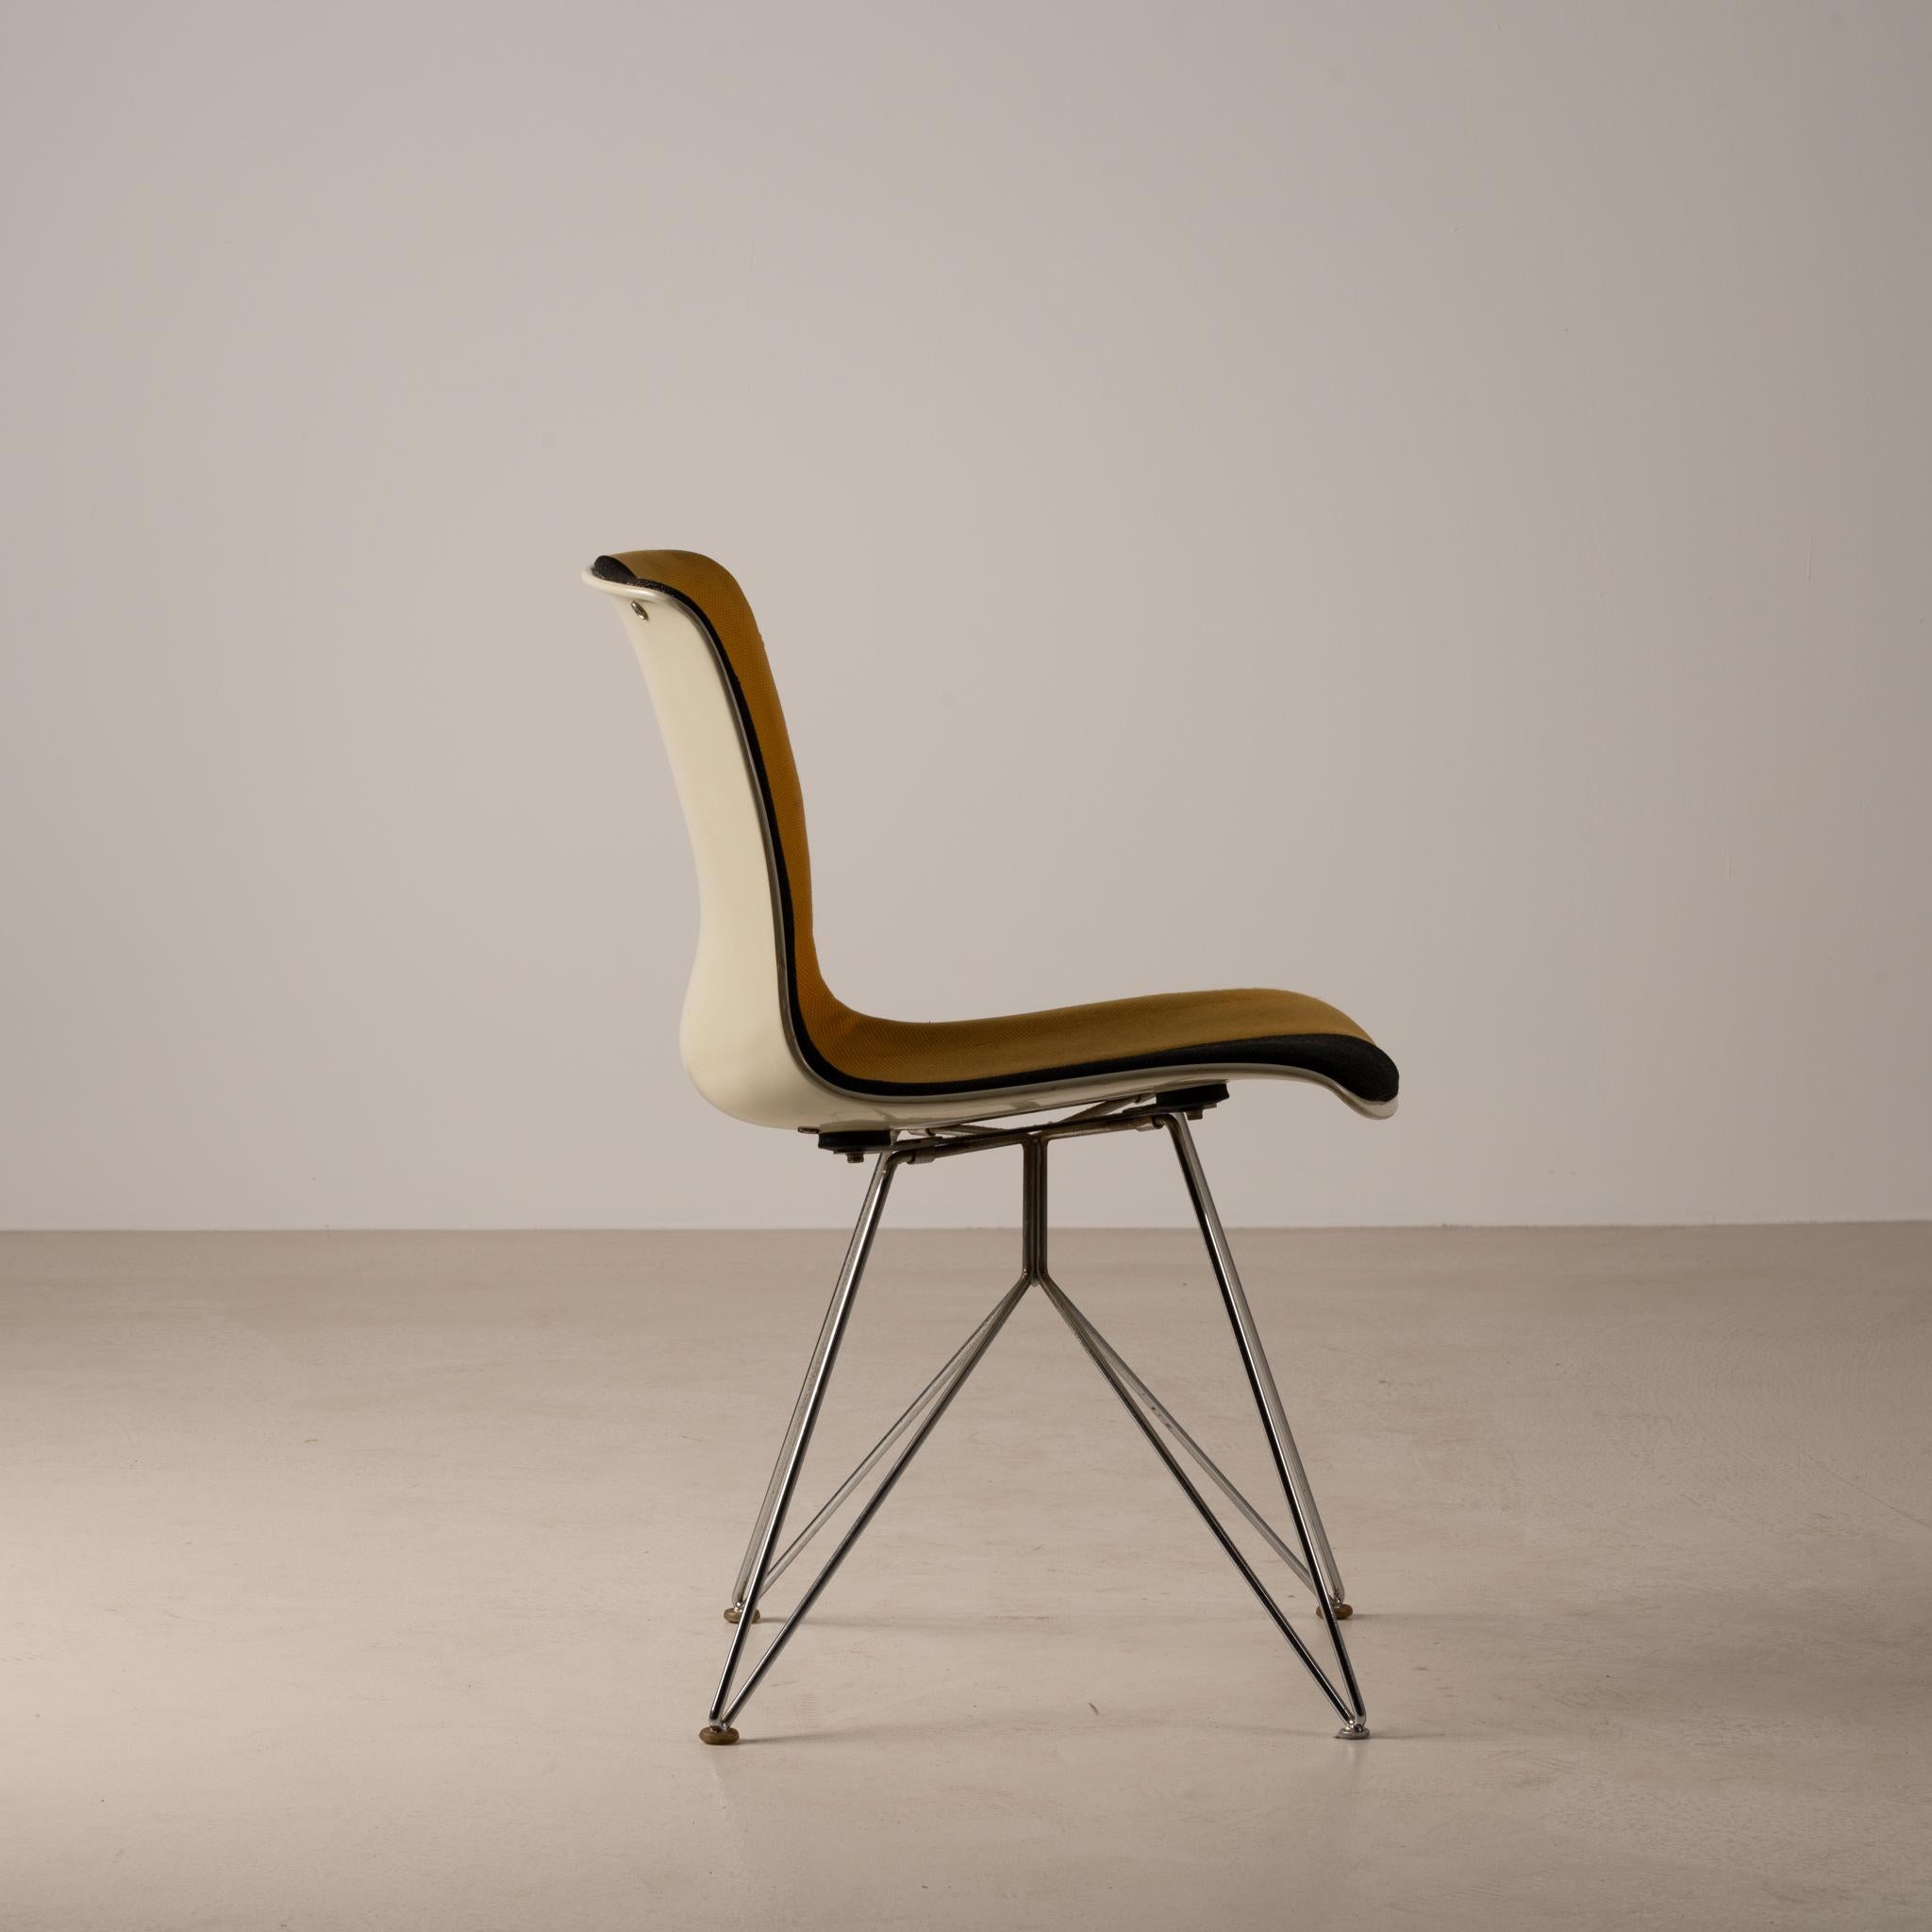 Japanese Kotobuki Chair by Sori Yanagi, 1969 For Sale